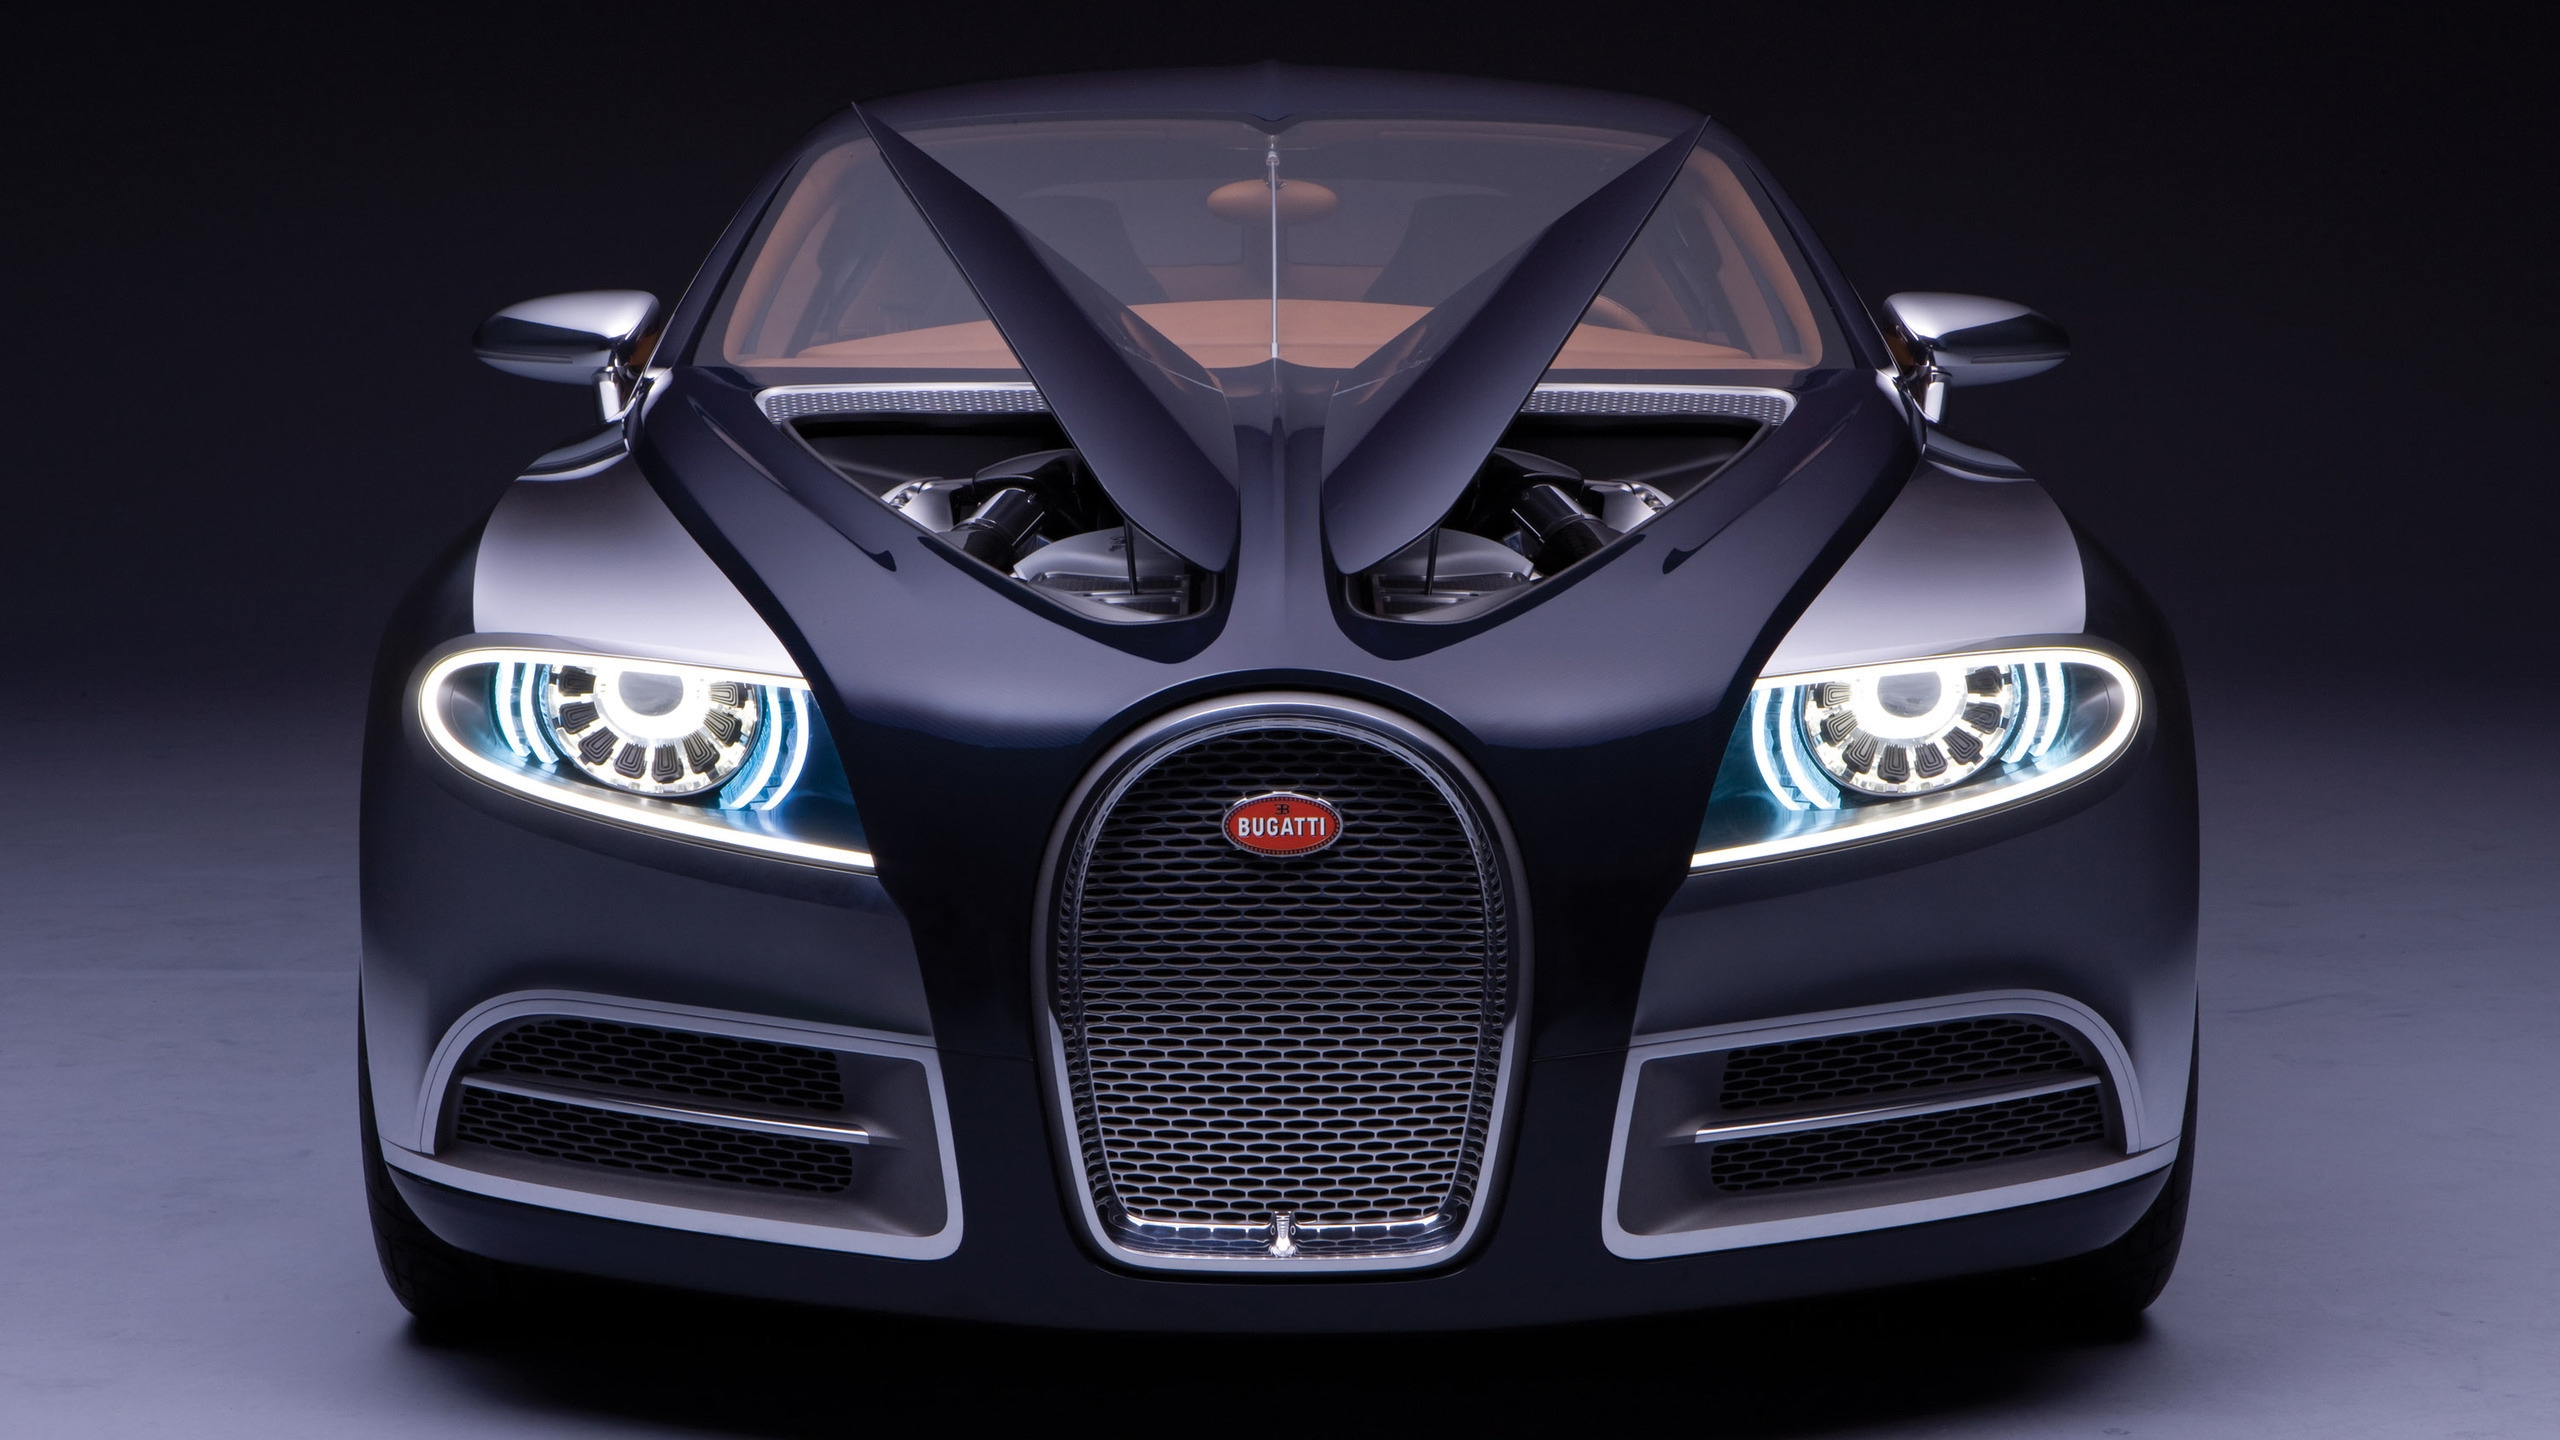 Bugatti for 2560x1440 HDTV resolution